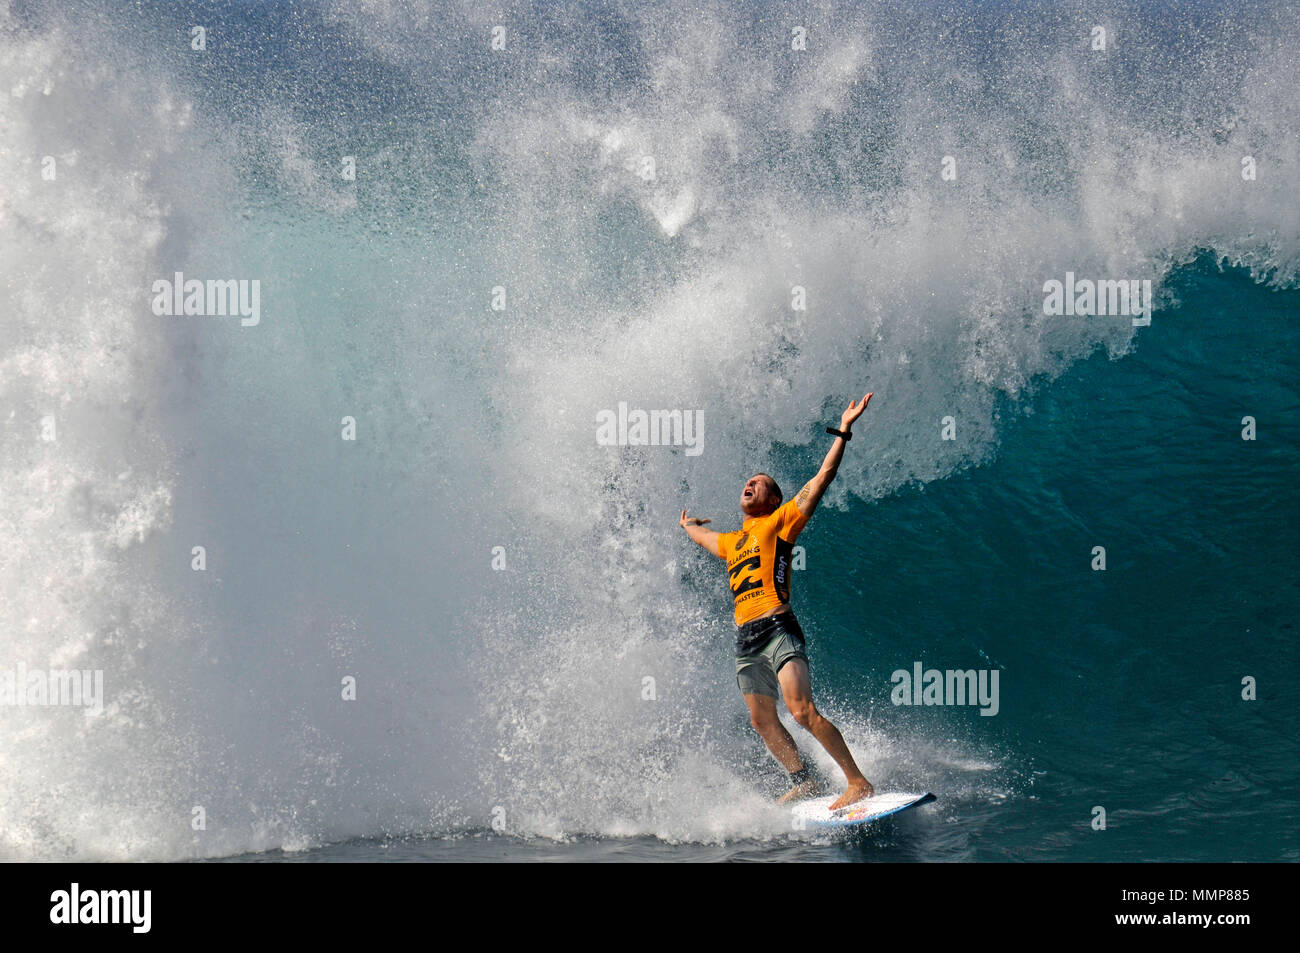 Mick Fanning surfeur professionnel célèbre surf une grosse vague pendant le Billabong Pipe Masters Championship 2015, North Shore, Oahu, Hawaii Banque D'Images